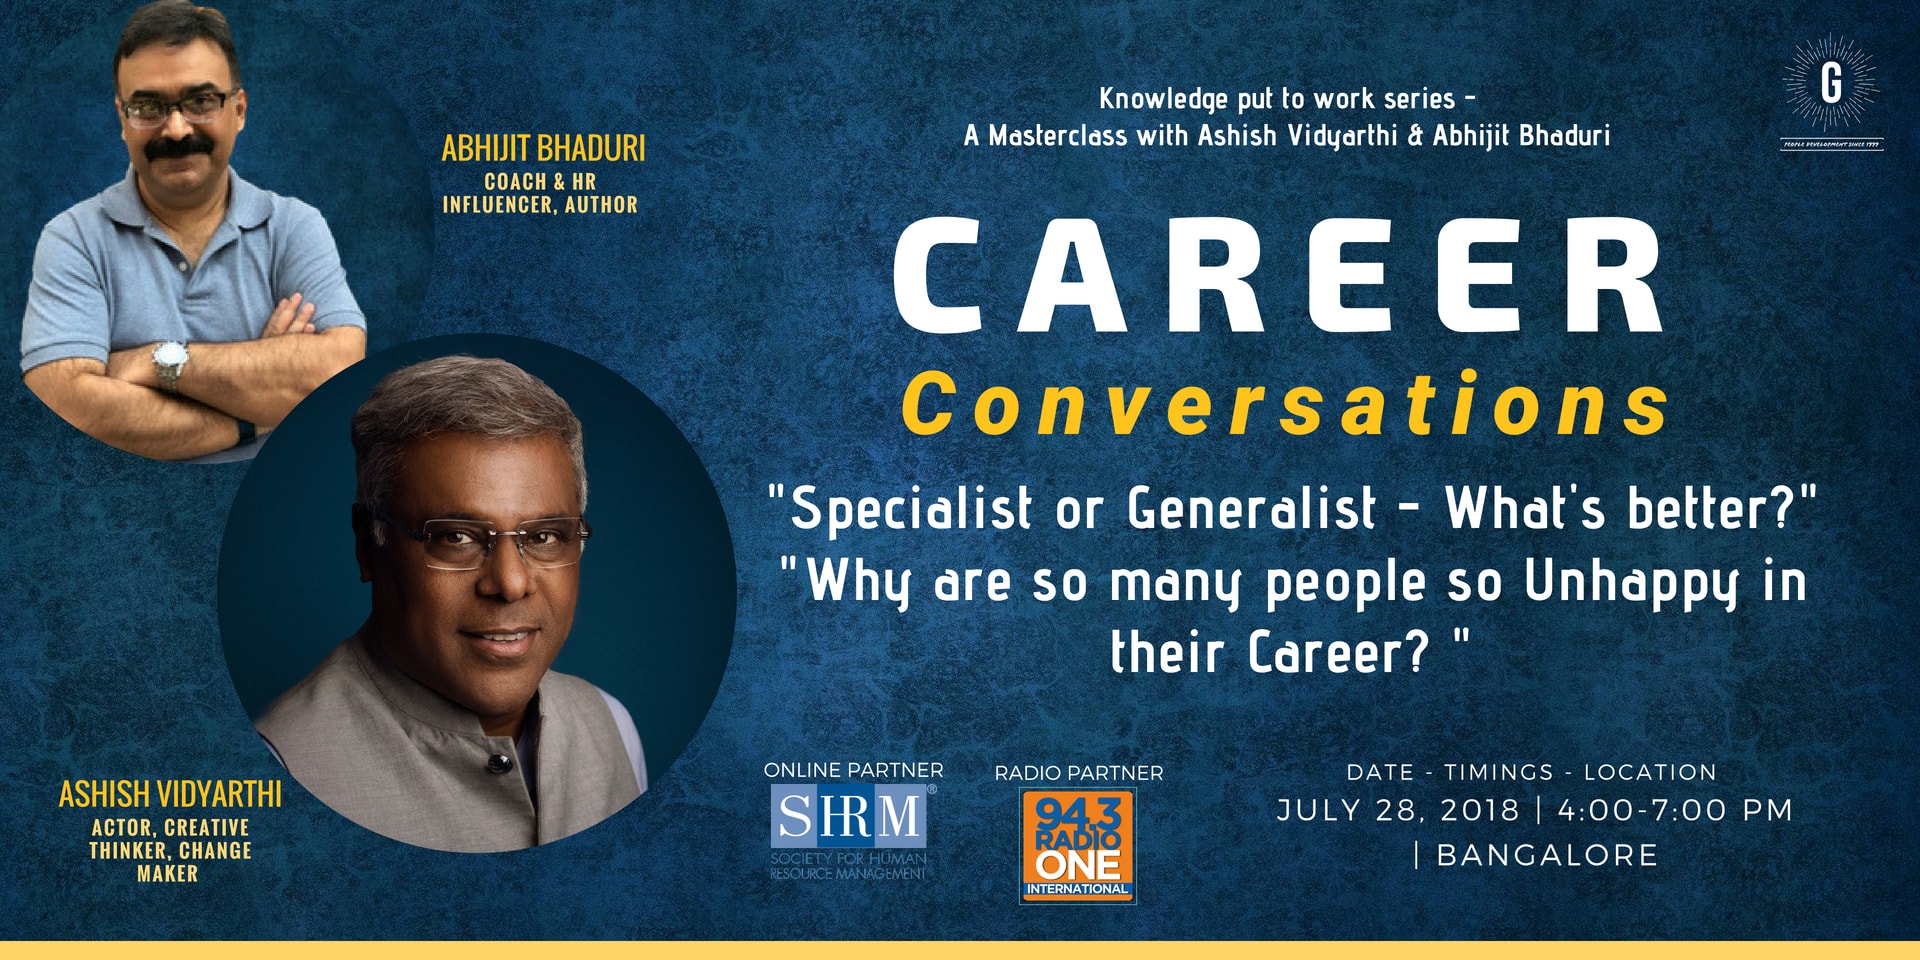 Career Conversations, South Delhi, Delhi, India